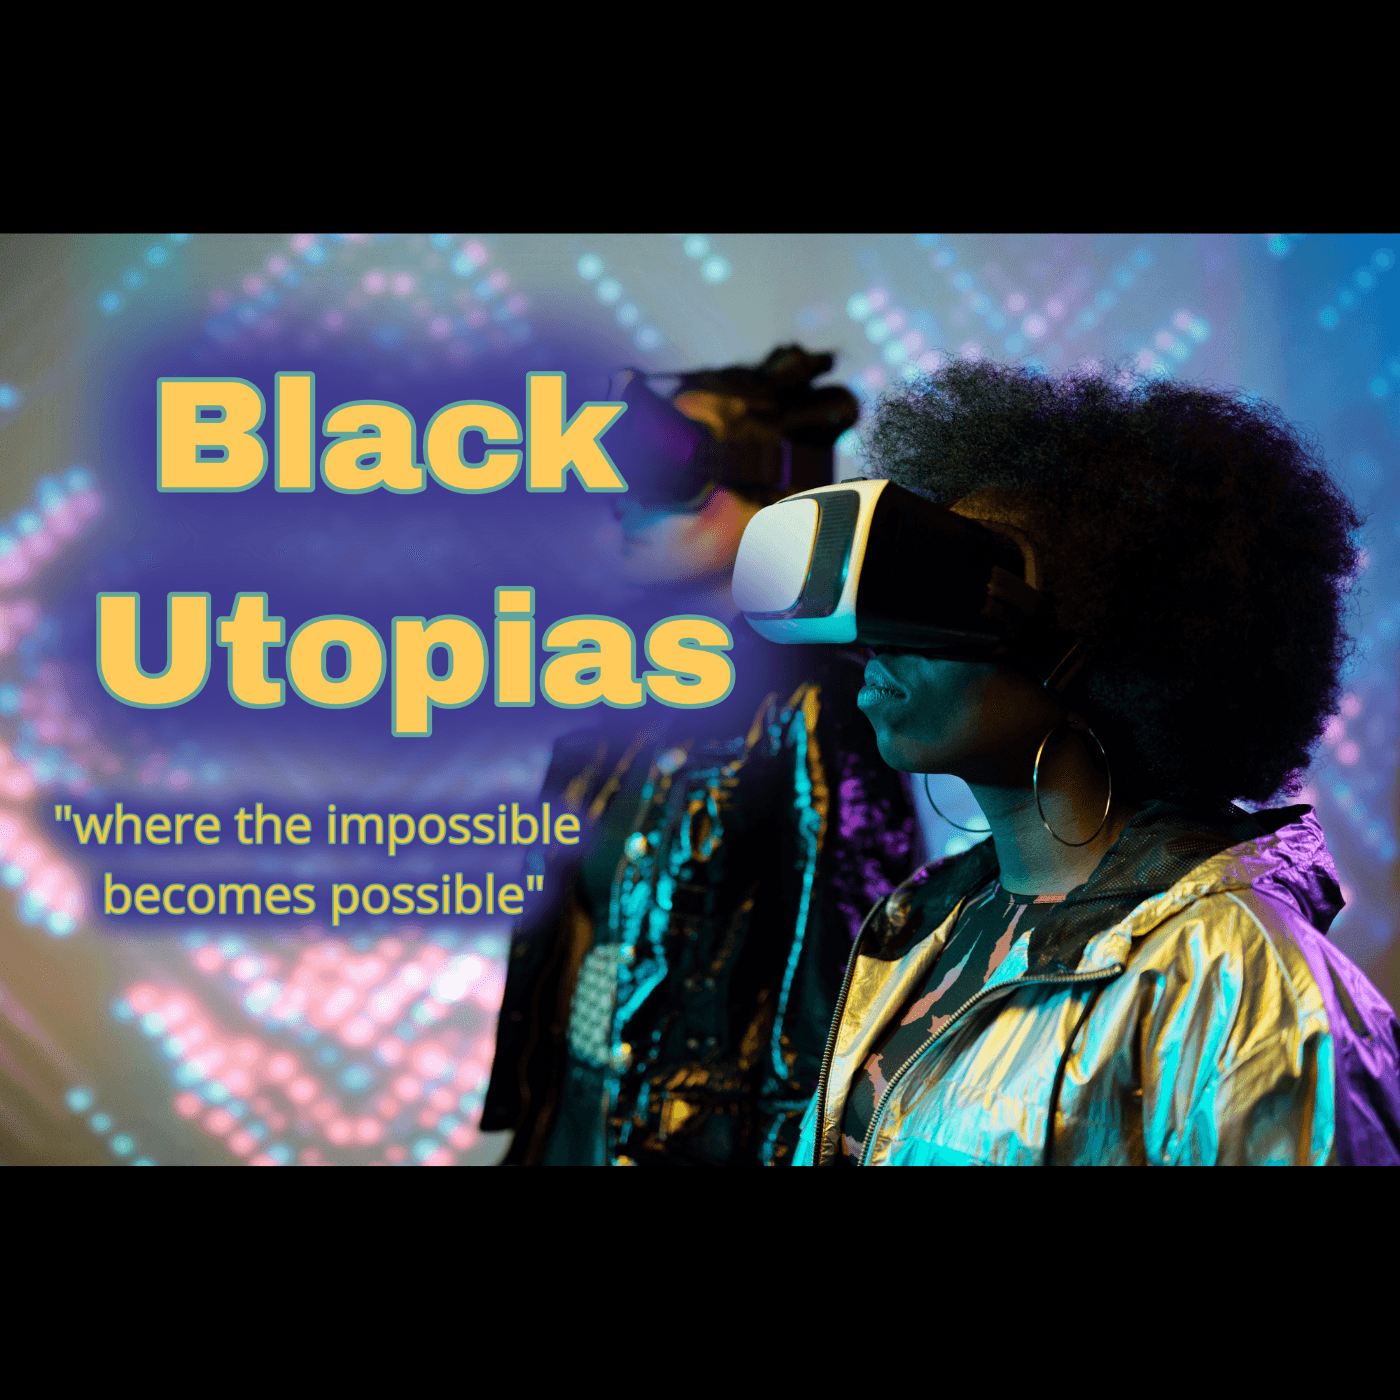 Thumbnail for "Black Utopias".